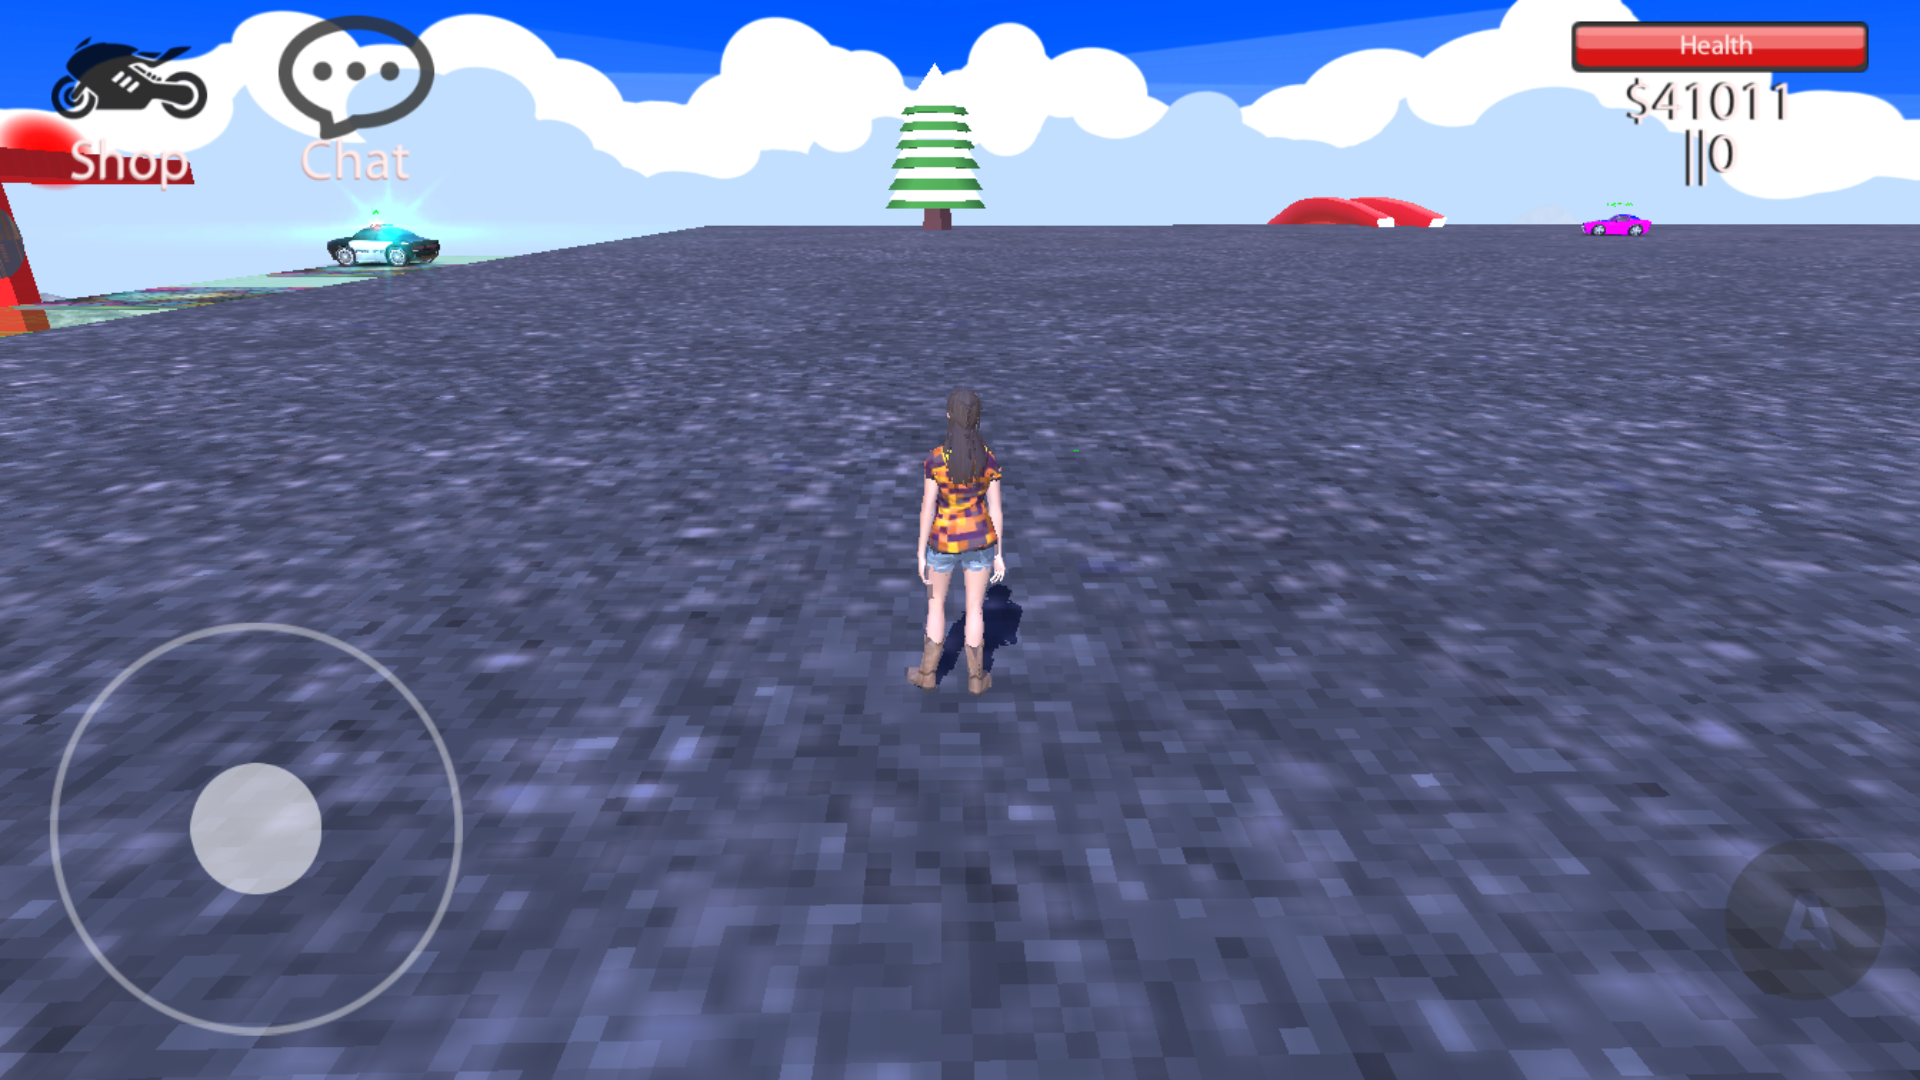 Freeroam City: Game estilo GTA tem modos online e offline (Android